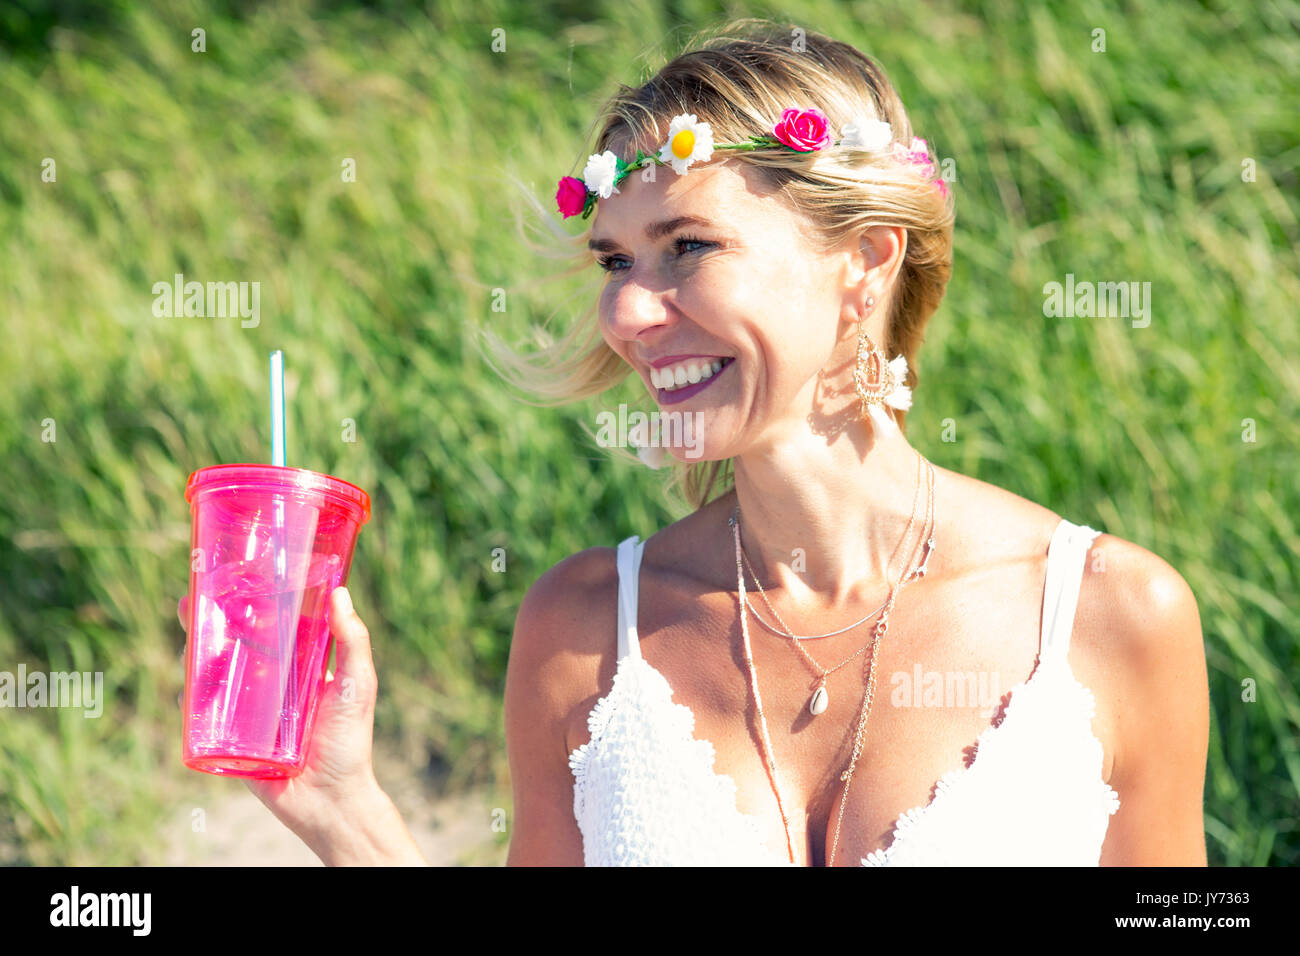 Ritratto di donna bionda con fiori nei capelli e tenendo una tazza Foto Stock